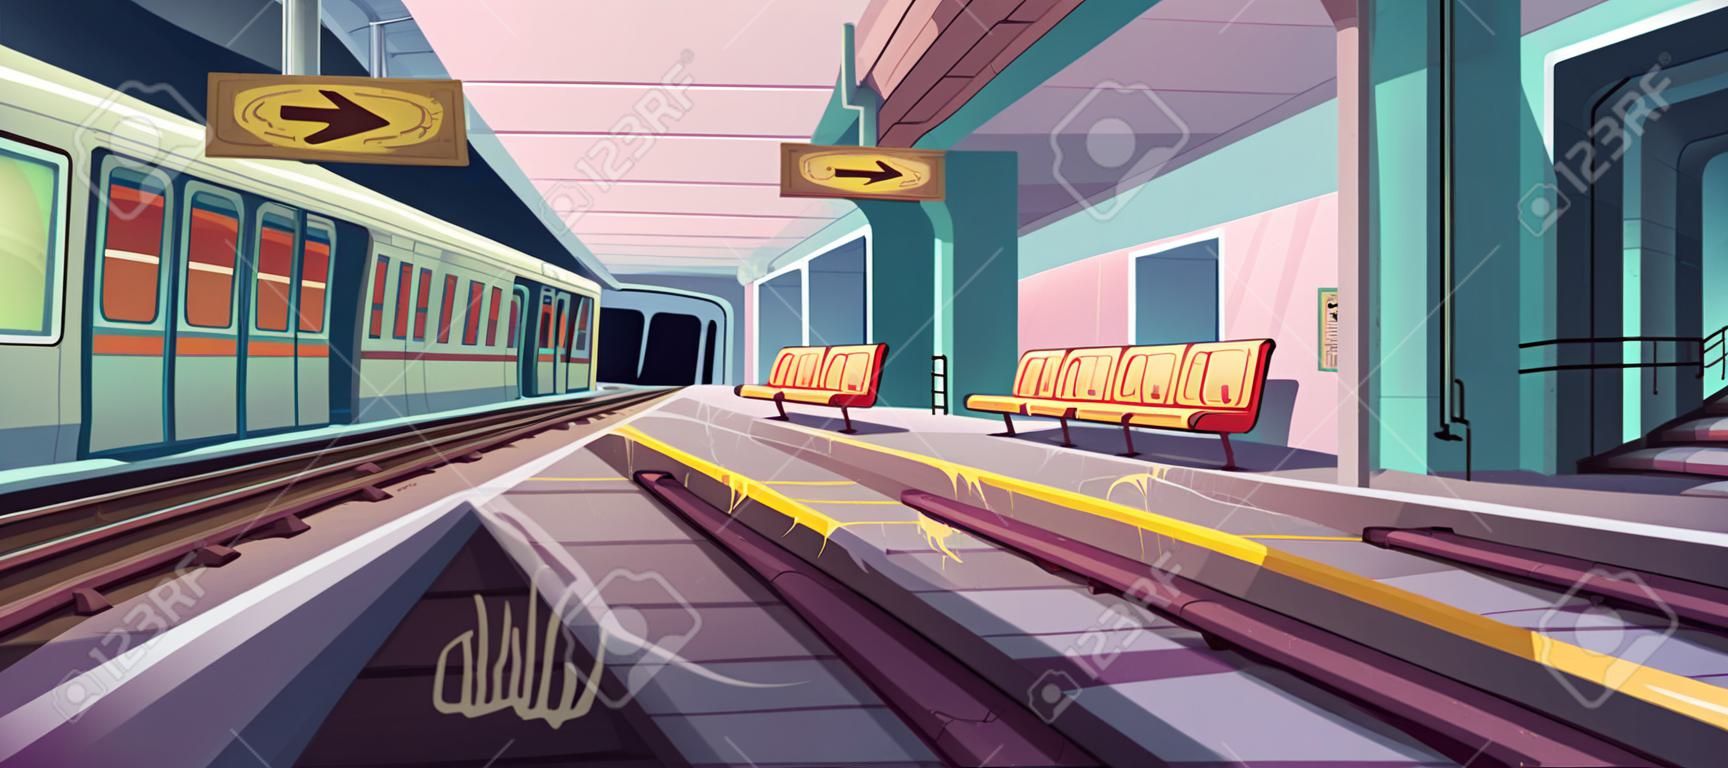 Estação de metrô, trem de chegada à plataforma de metrô vazia do túnel subterrâneo. Ilustração em vetor do interior do metrô bagunçado com lixo, grafite em assentos e paredes na área do gueto